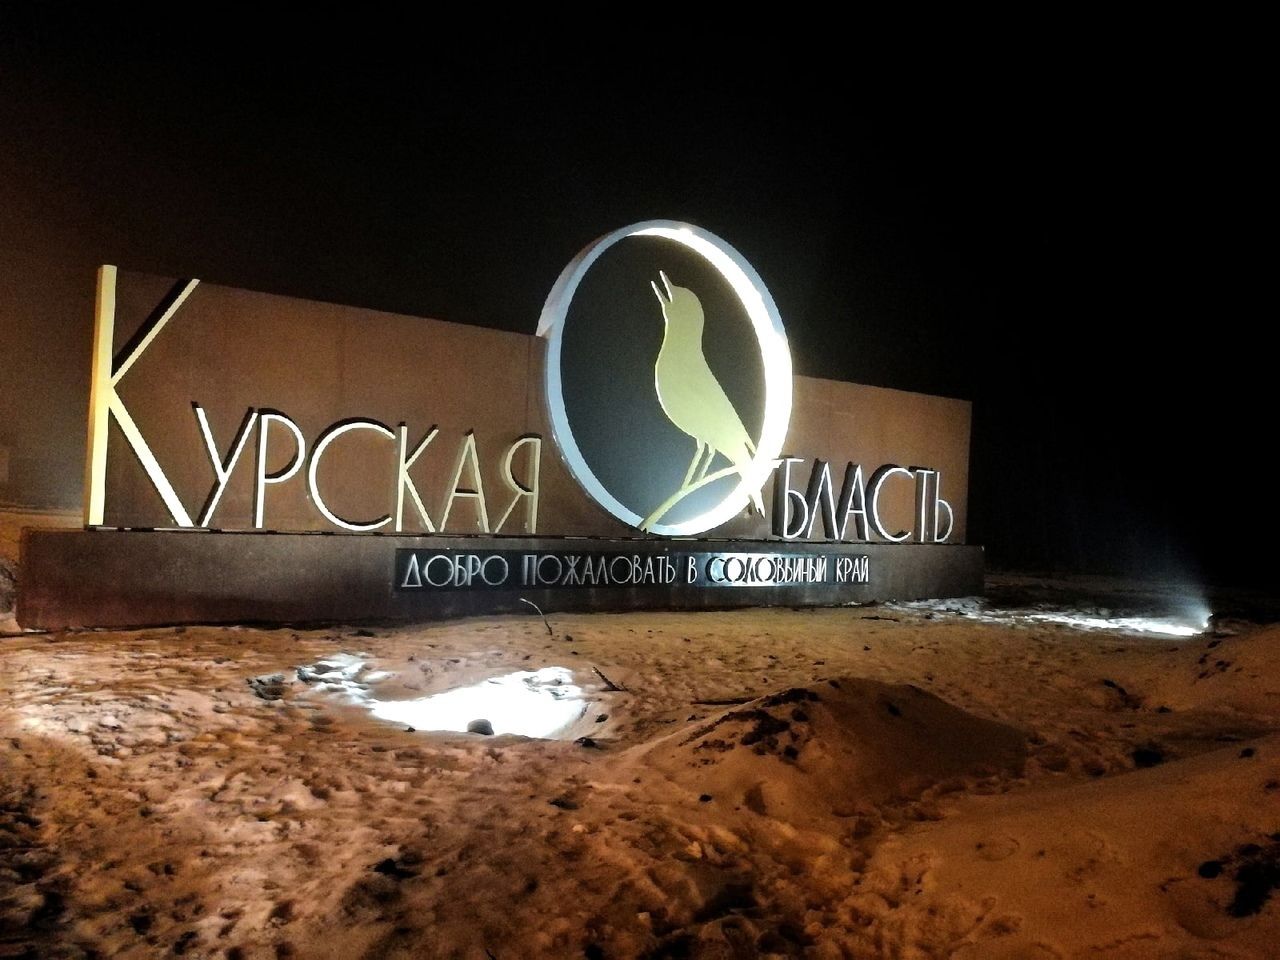 "Нервы сдают": жителей Курска напугали взрывы, над городом черный дым 